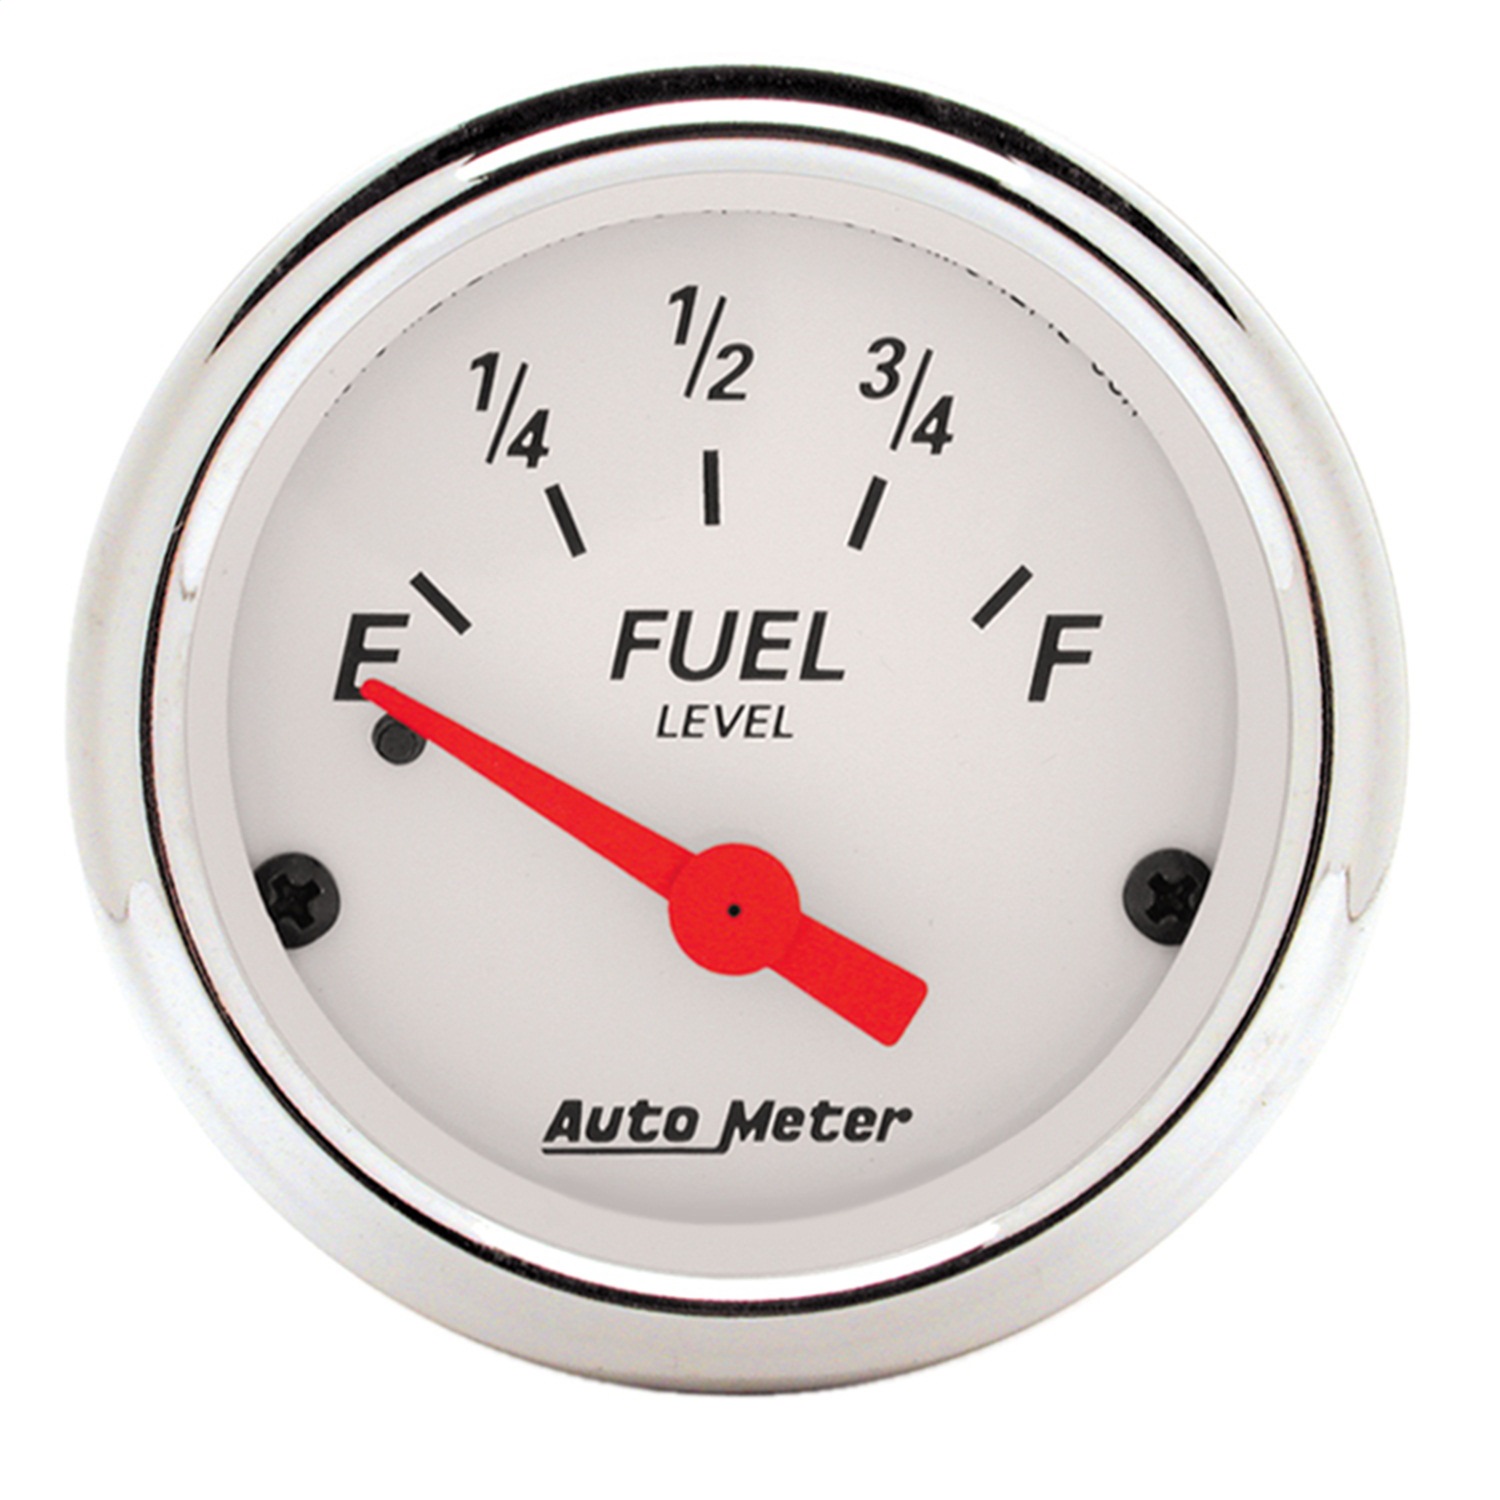 Auto Meter Auto Meter 1318 Arctic White; Fuel Level Gauge